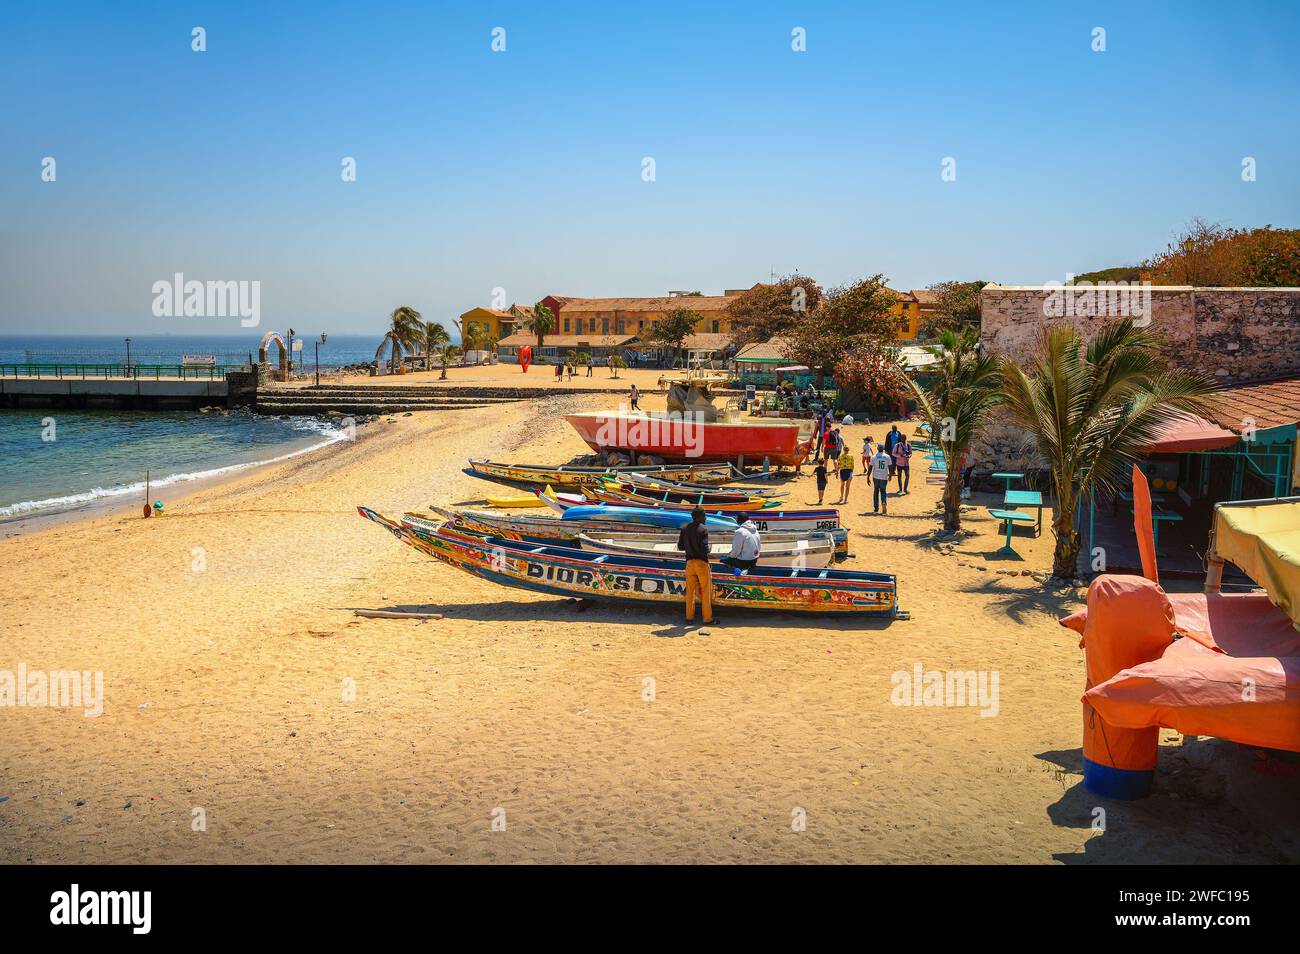 Bateaux de pêche sur la plage de sable à Gorée Island avec océan et jetée, Sénégal Banque D'Images